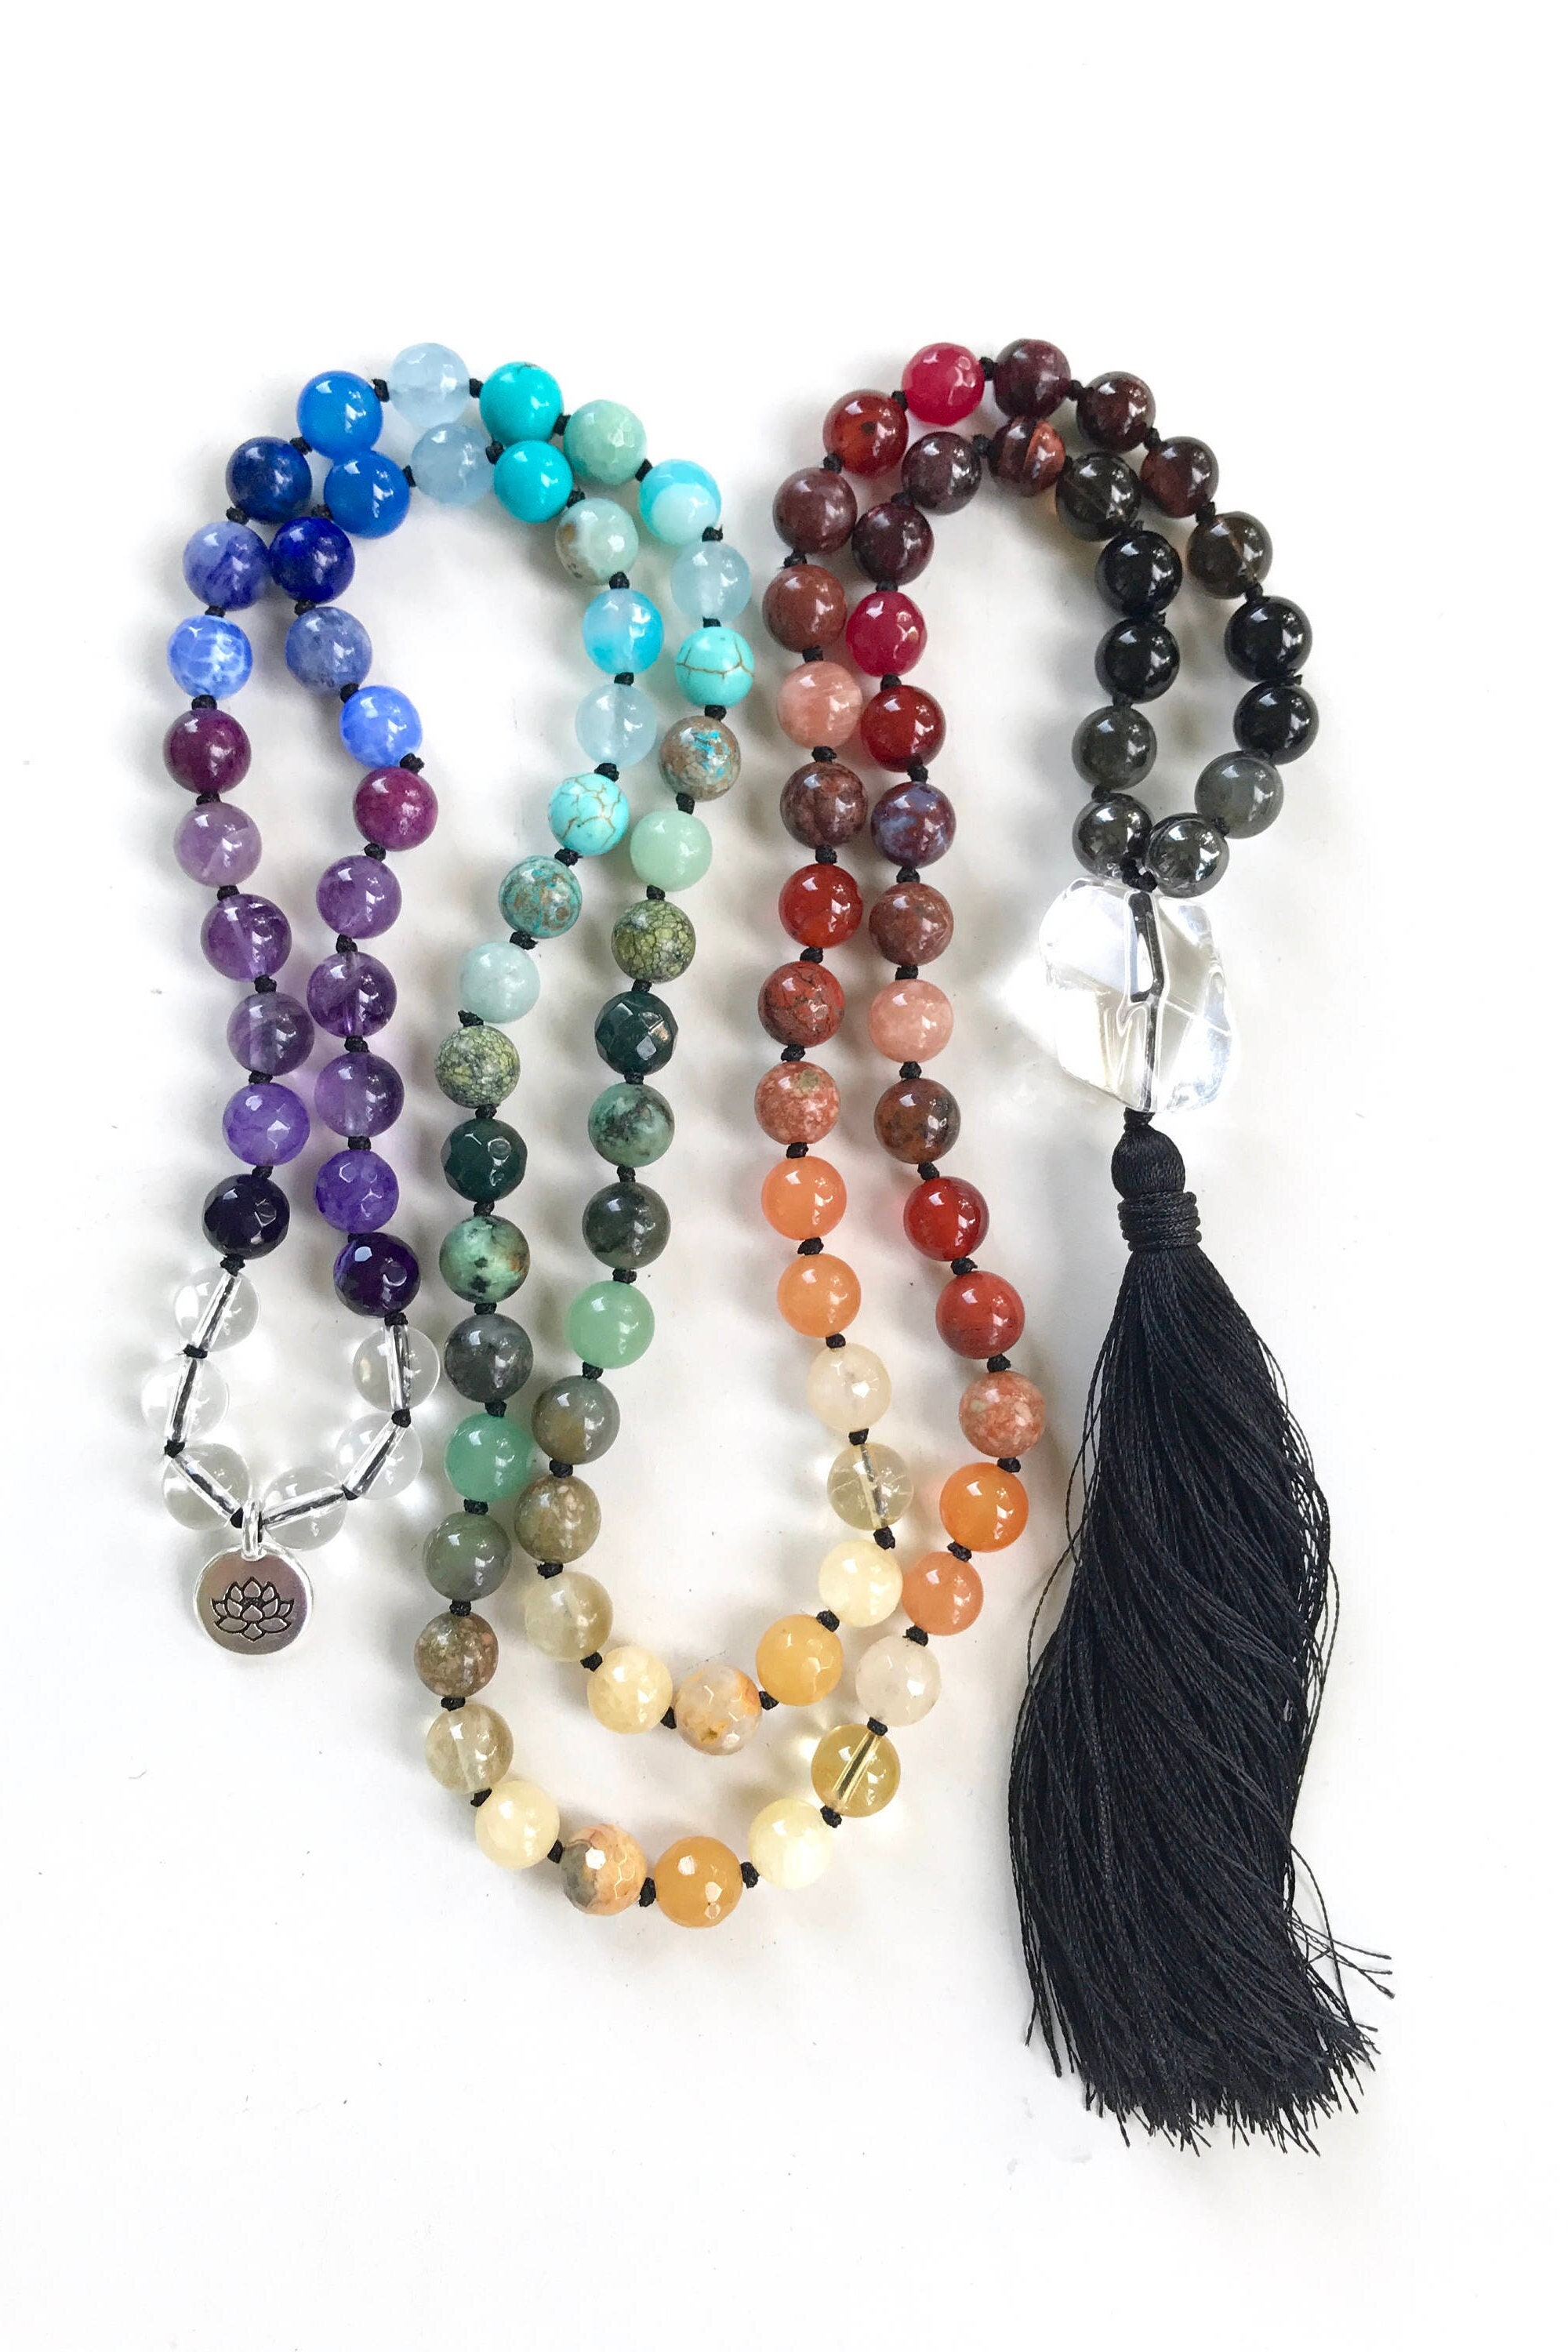 Balance The Chakras - Mala Beads - Chakra Healing Mala Necklace - 108  Beaded Mala - Silk Tassel - Prayer Beads